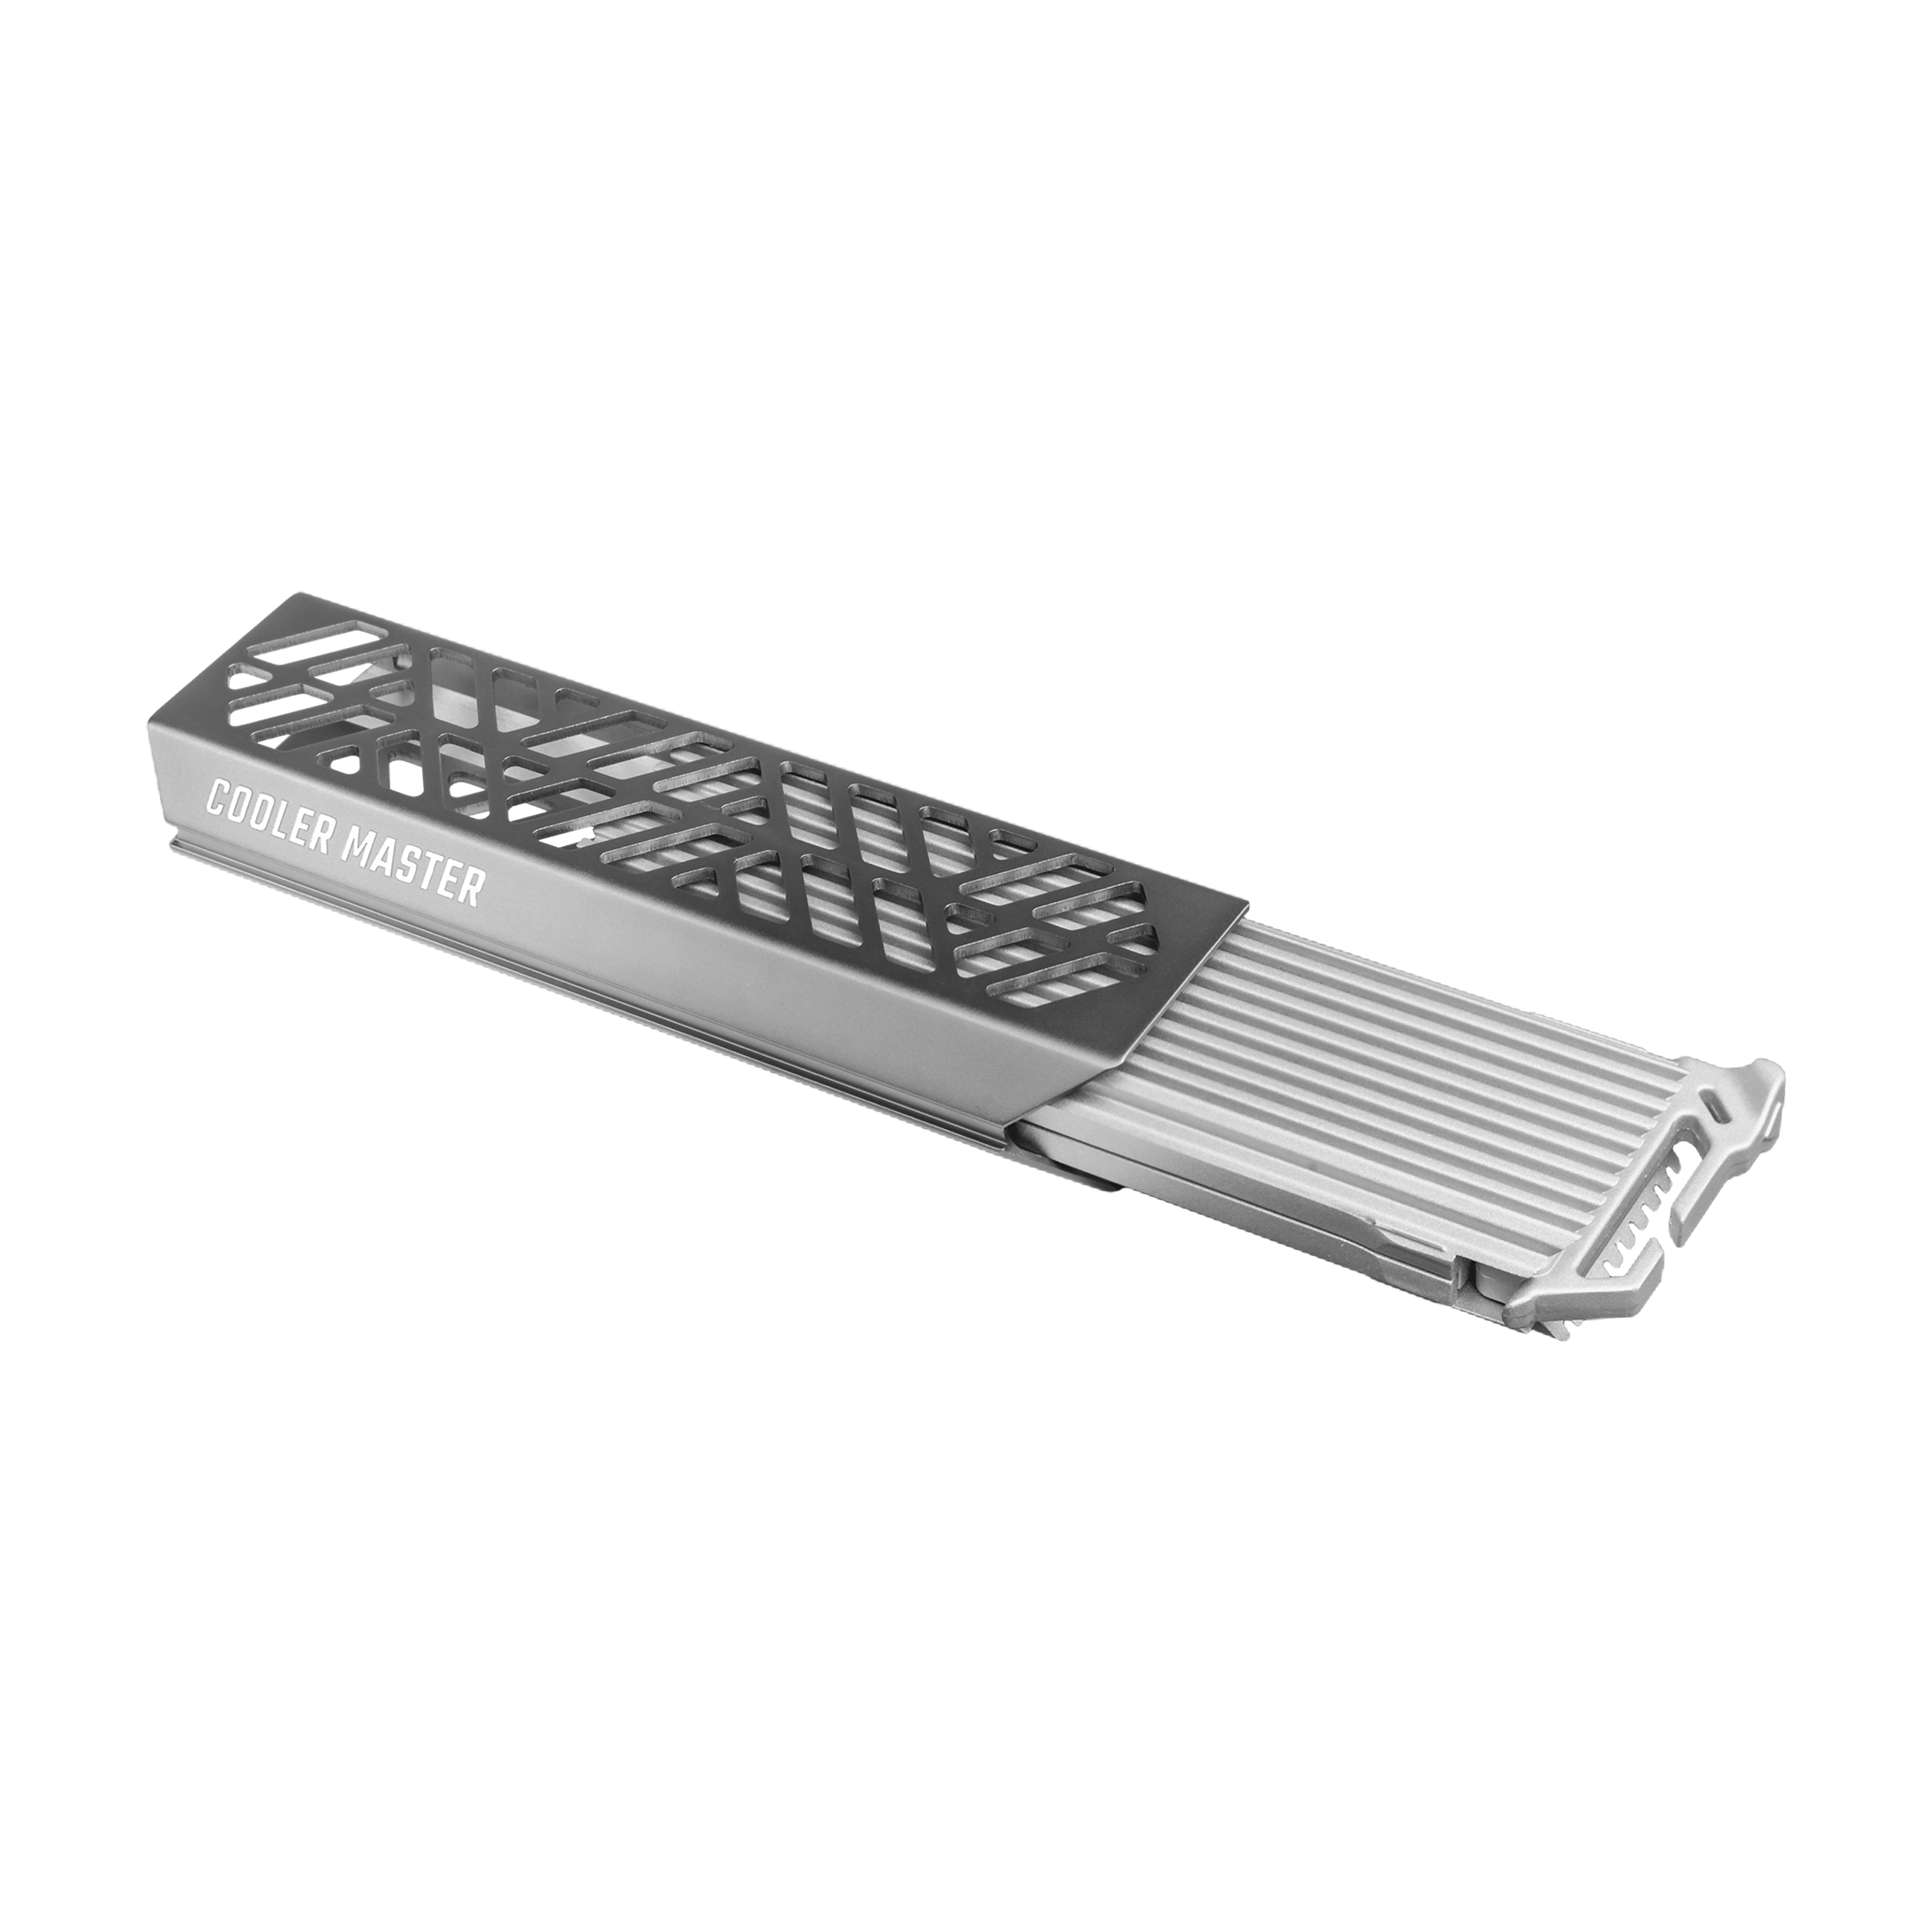 Cooler Master Oracle Air USB 3.2 Gen 2 pour SSD M.2 NVME - Boîtier externe - 0